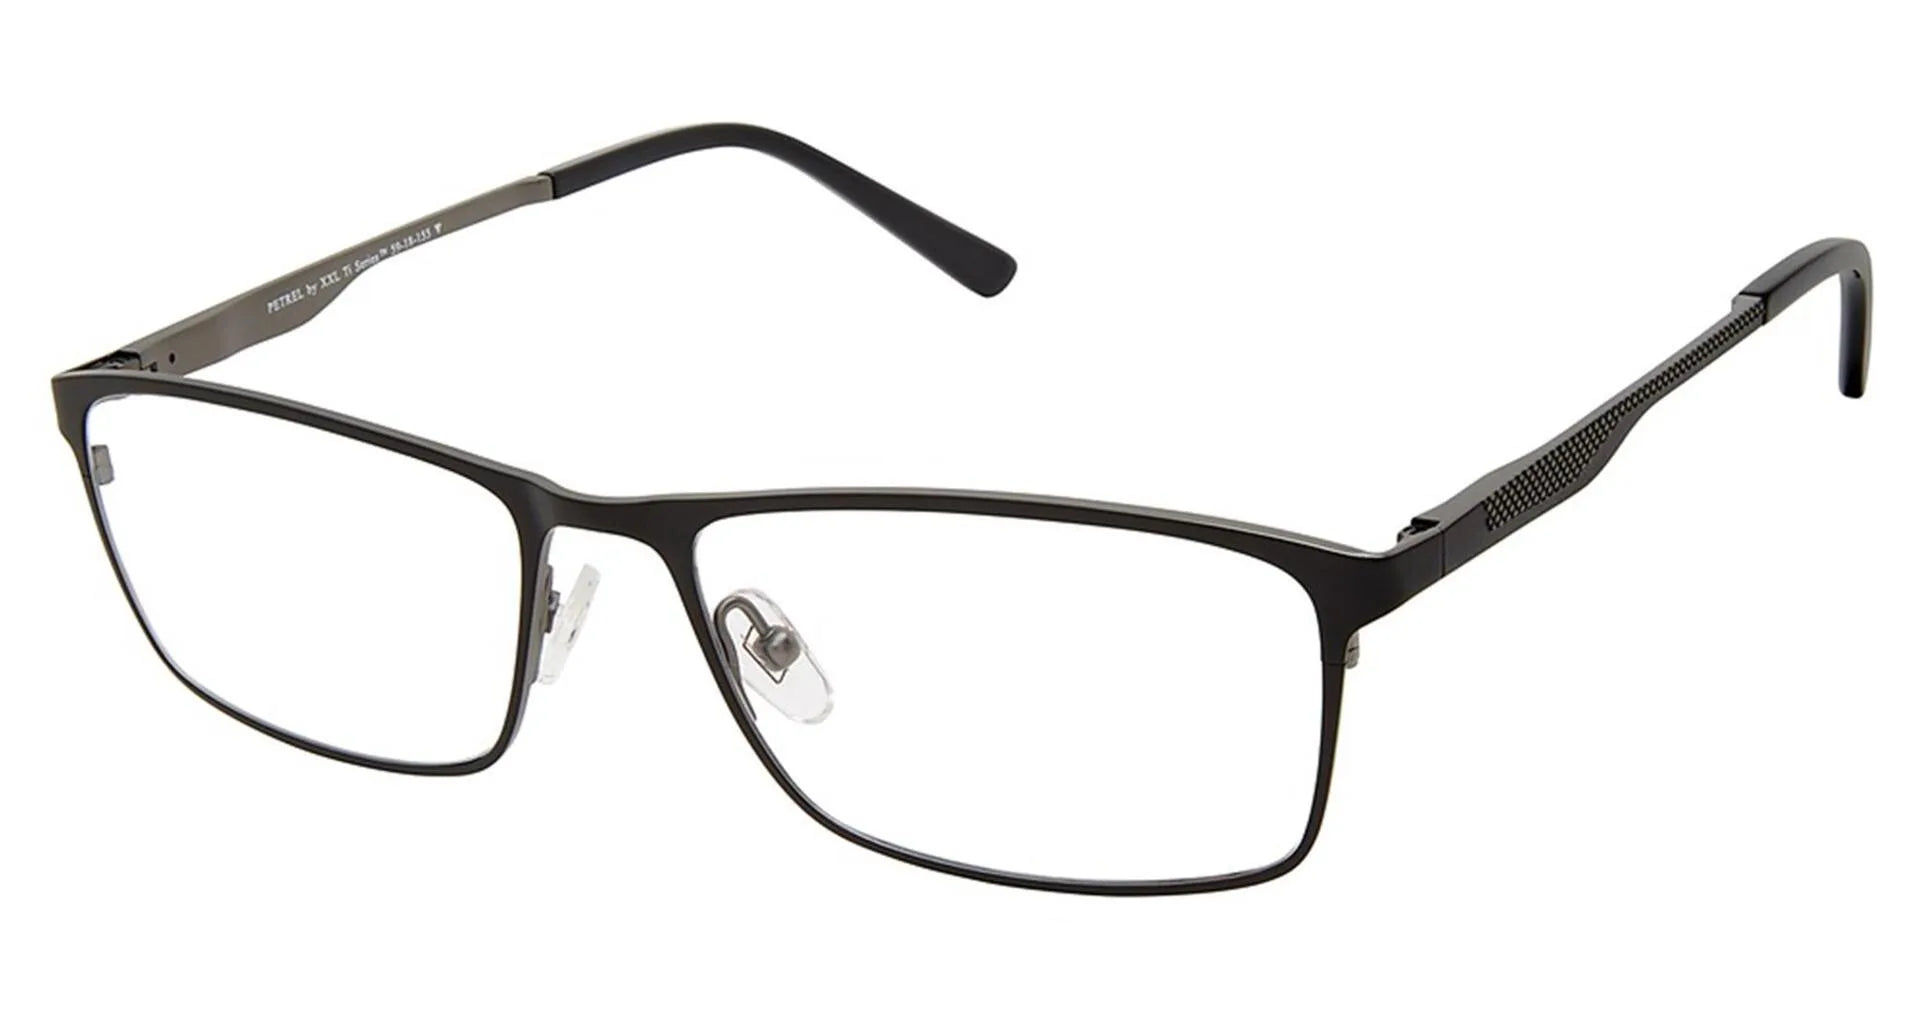 XXL Eyewear Petrel Eyeglasses Black